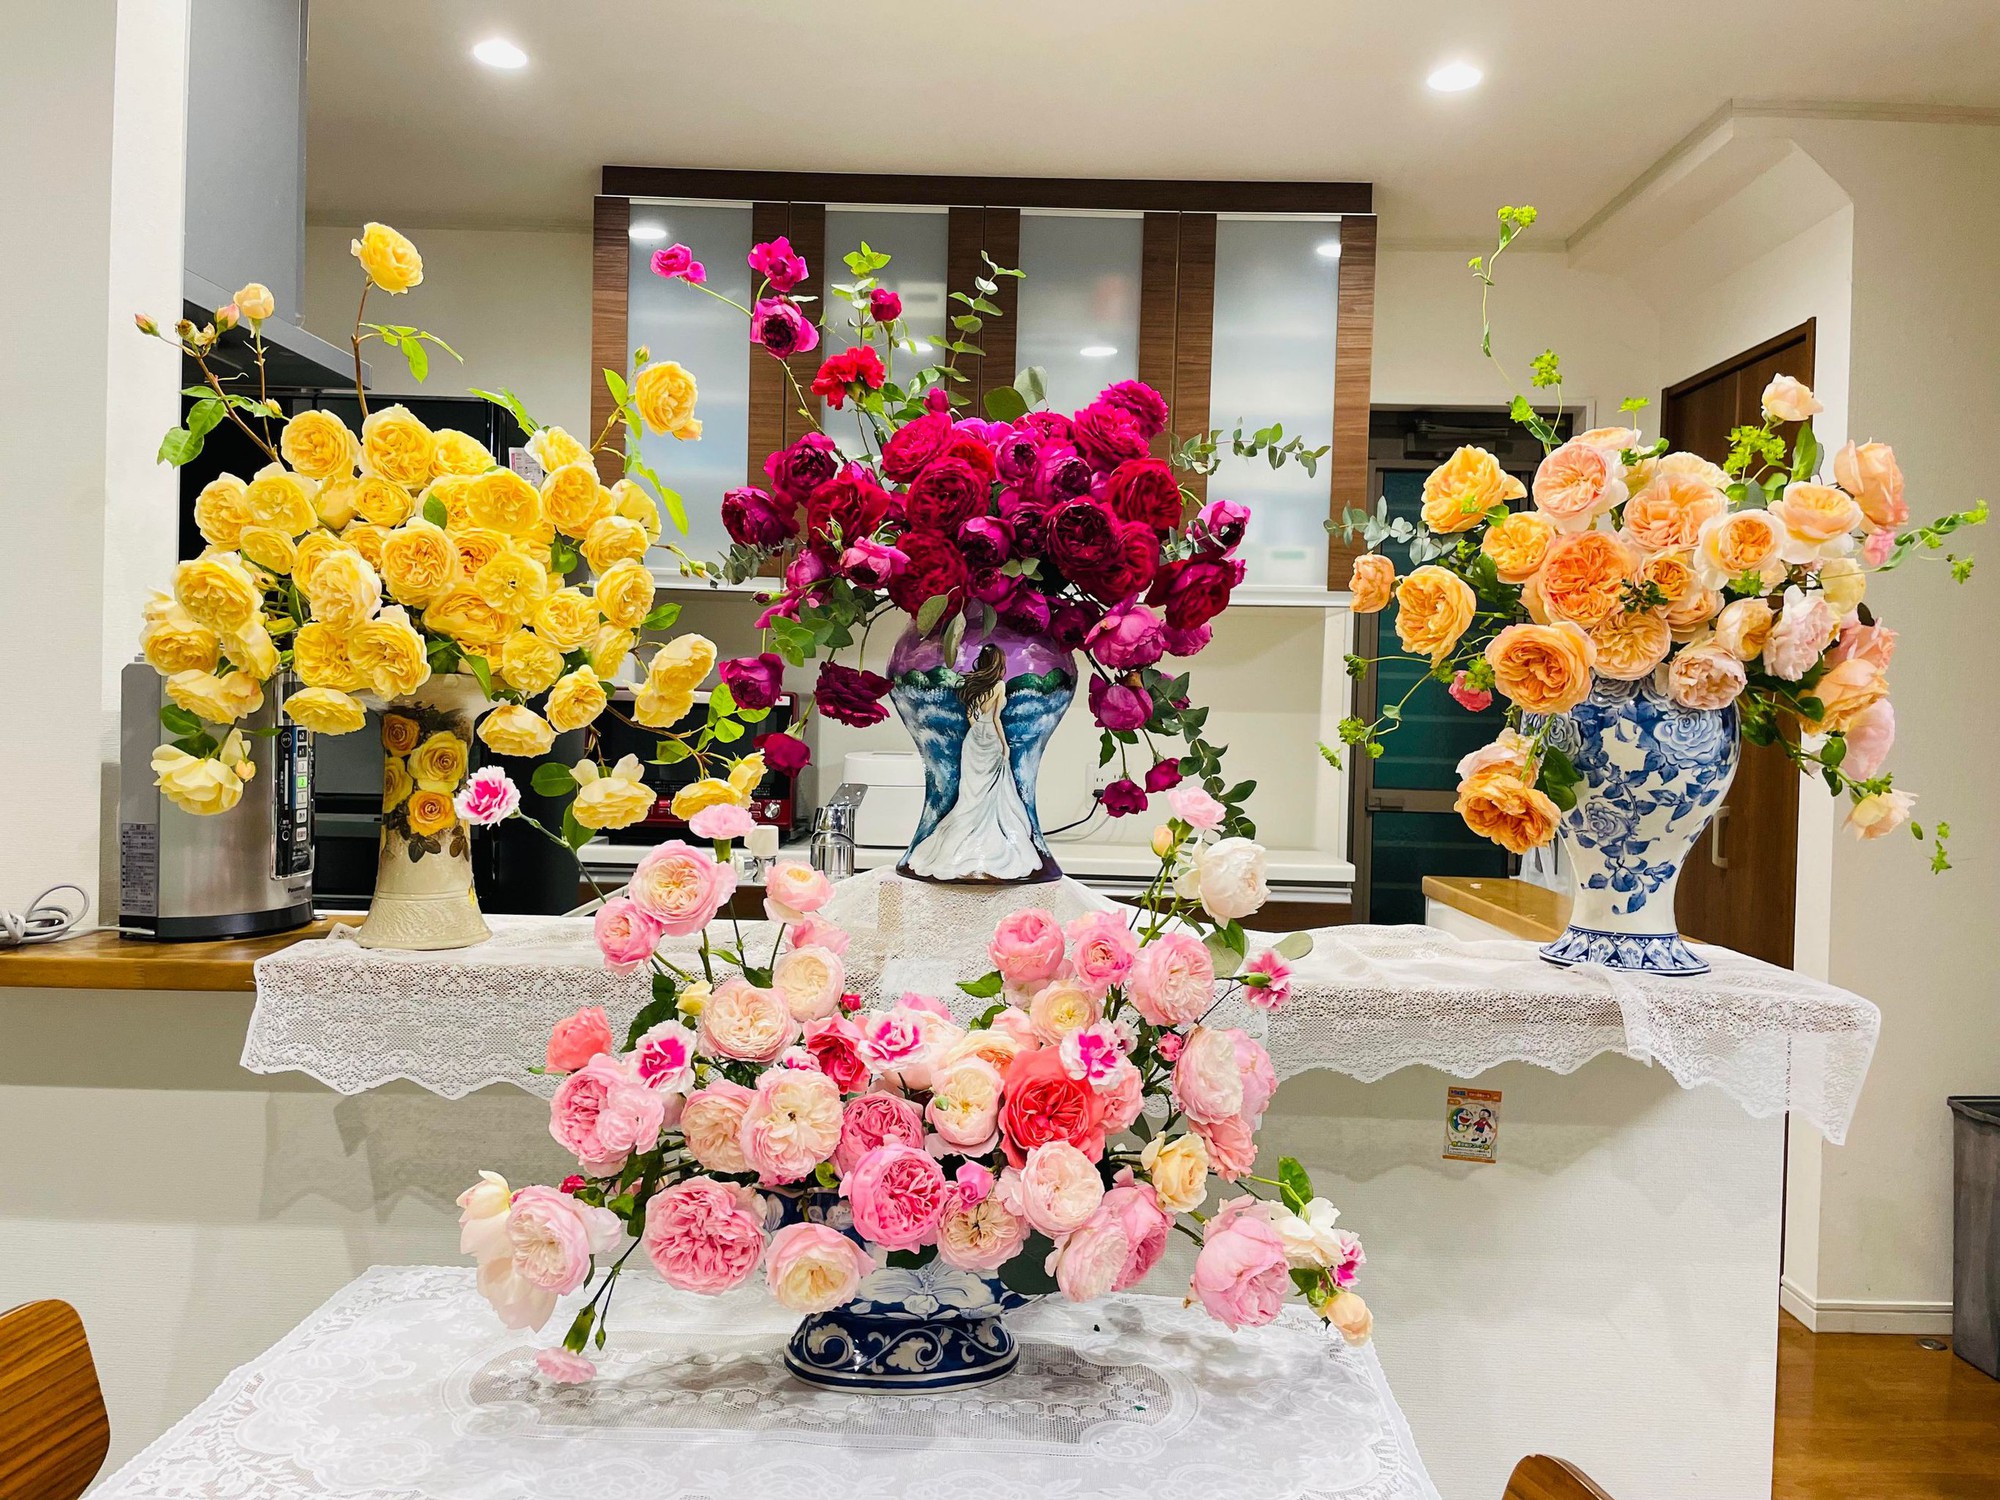 Ngôi nhà lúc nào cũng thơm nức mùi hoa vì có vườn hồng hơn 80 loại của mẹ Việt ở Nhật- Ảnh 26.